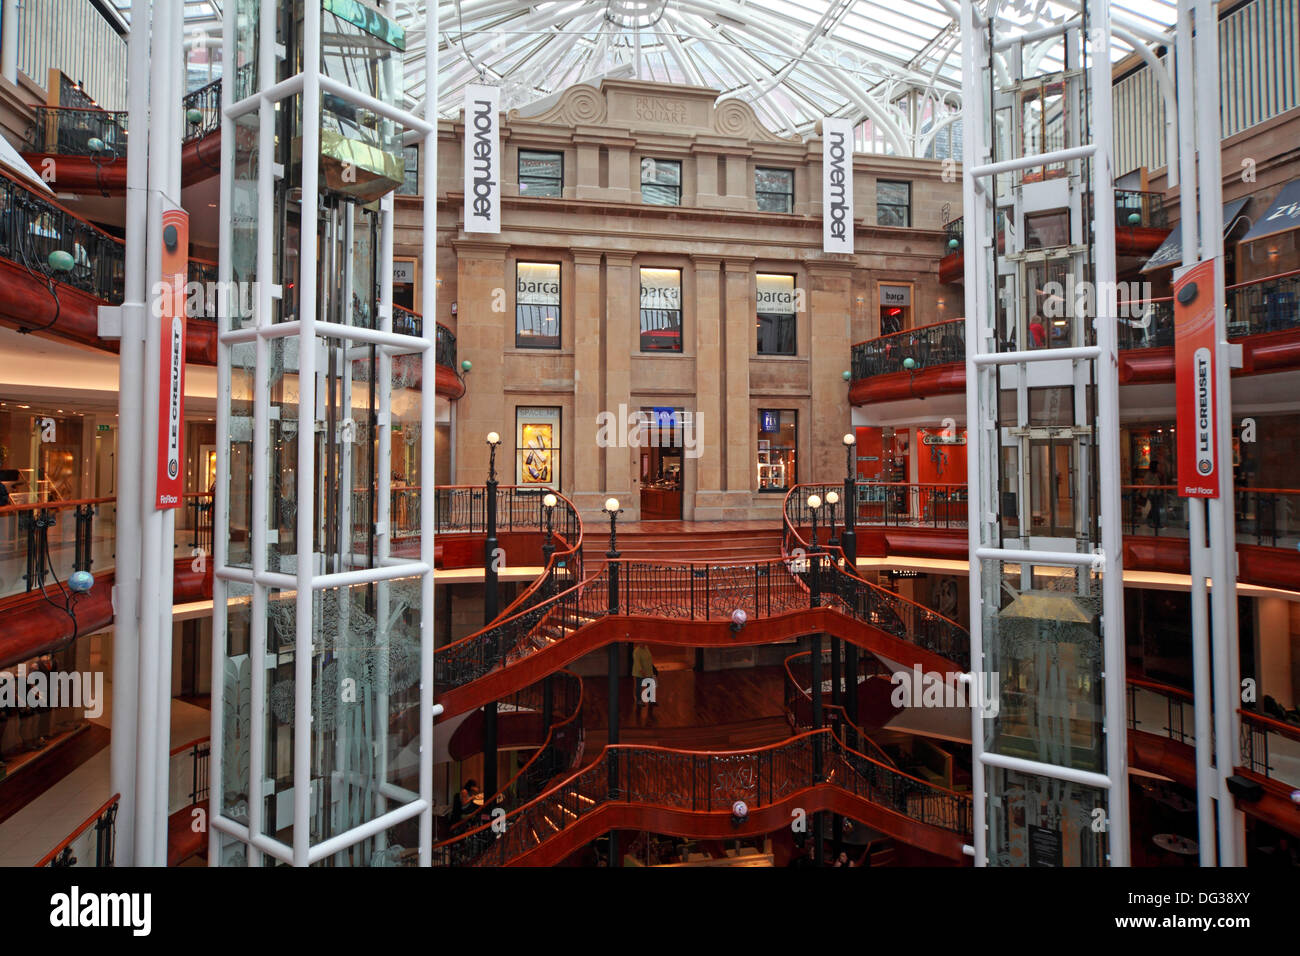 Princes Square Shopping Centre intérieur le centre-ville de Glasgow, Strathclyde en Écosse UK Banque D'Images